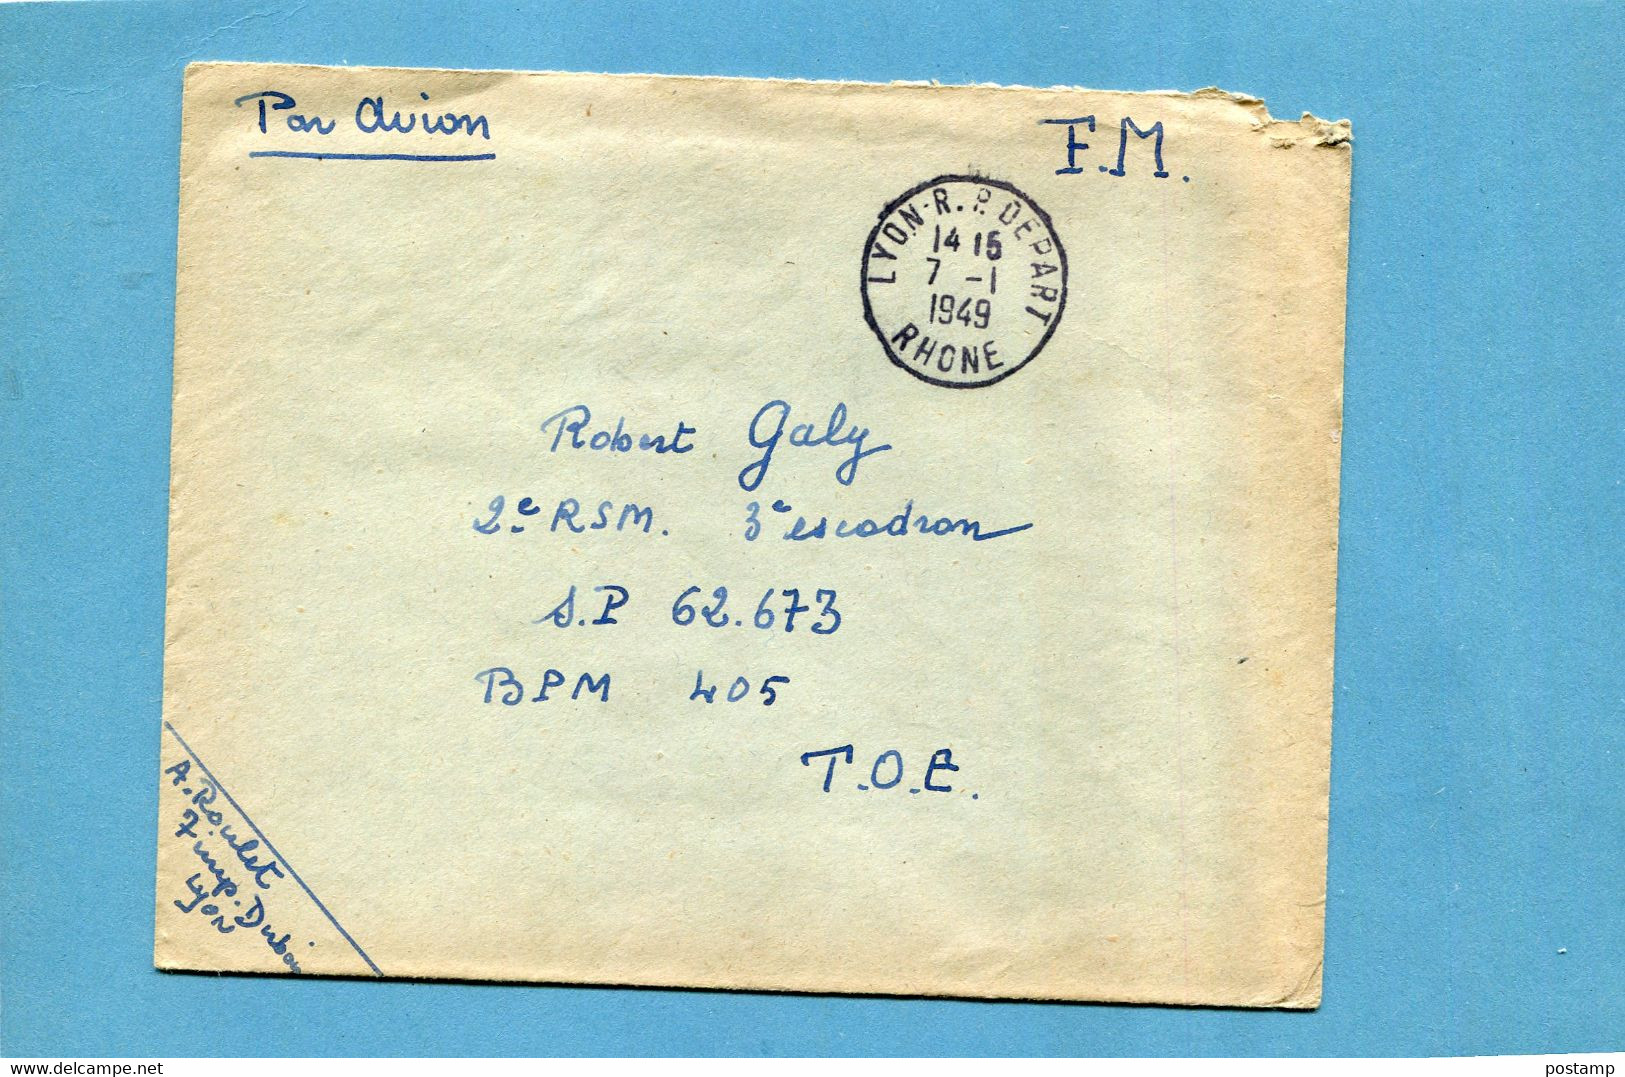 Marcophilie-guerre -indochine-Lettre En FM  Cad Lyon 1949 Pour T O E SP  62673 BPM 405 - Guerra De Indochina/Vietnam